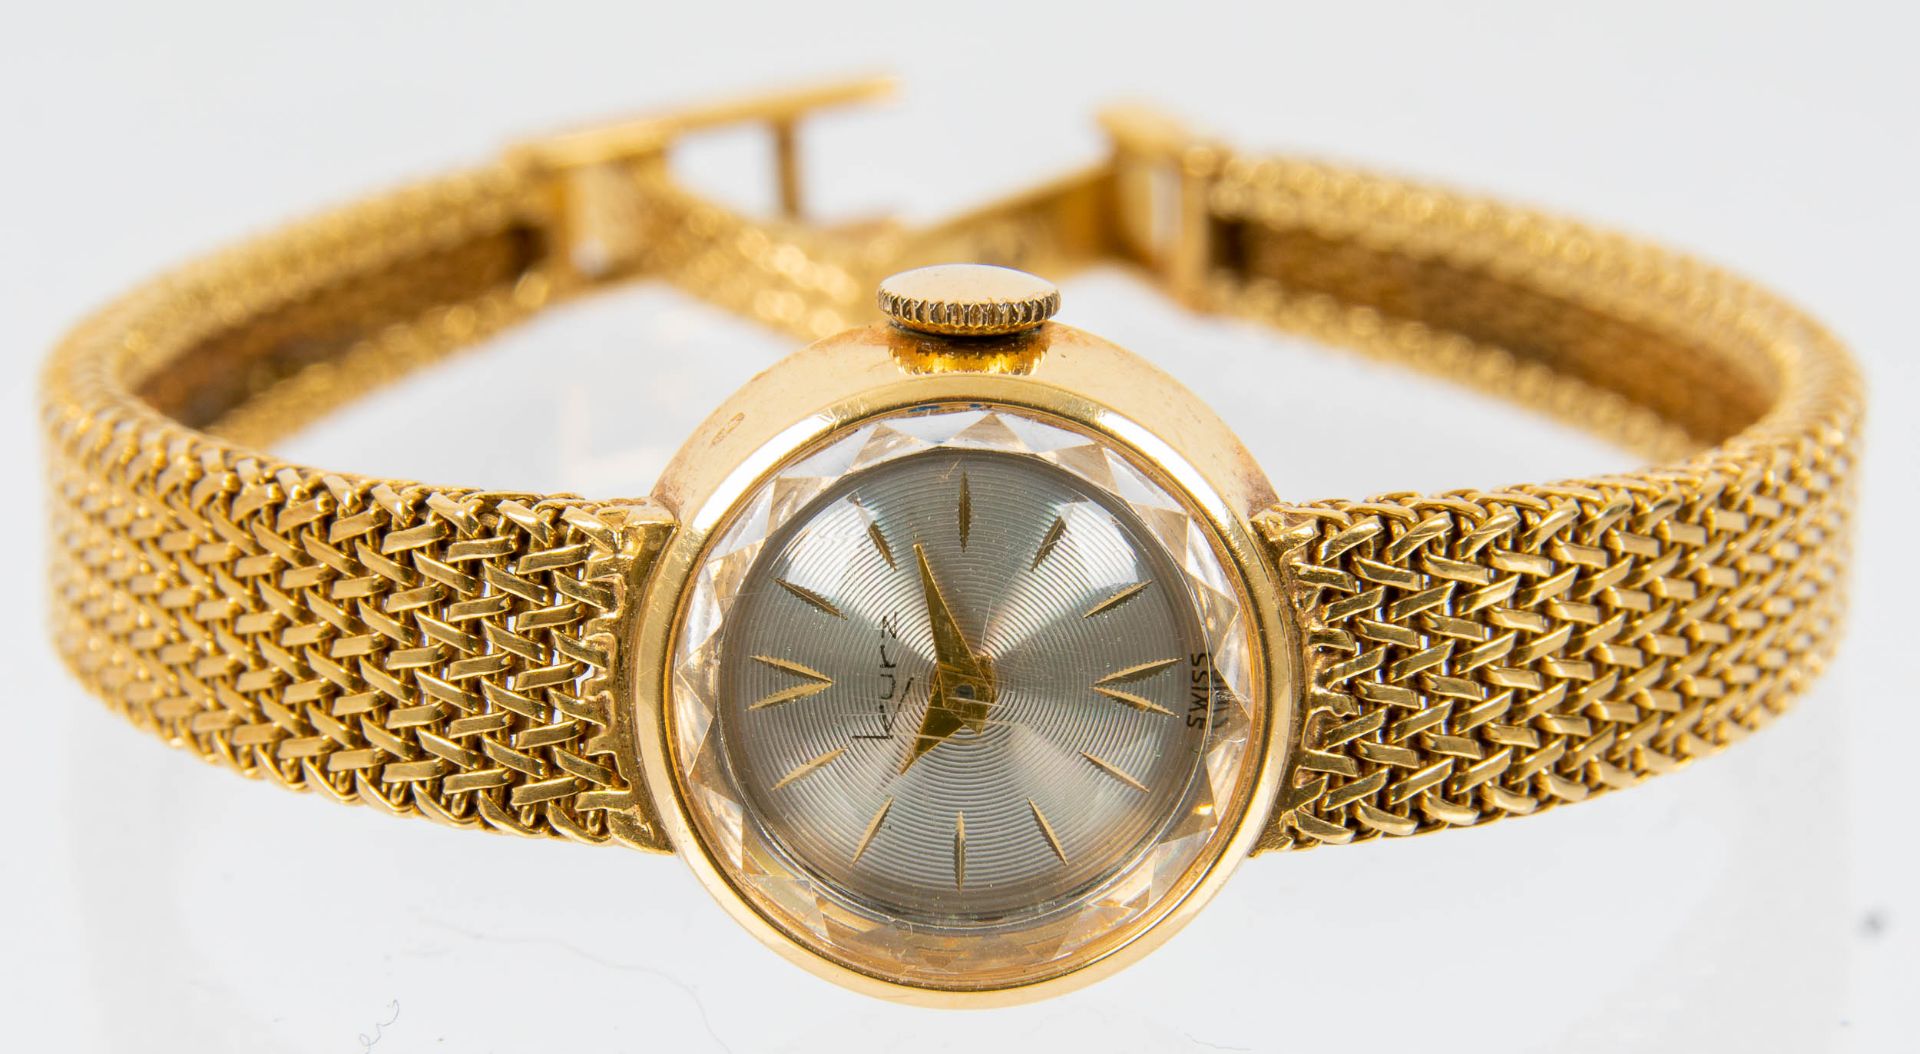 Klassische Damenarmbanduhr der Marke "KURZ-SWISS", Gehäuse und Armband in 750er Gelbgold, Werk läuf - Image 3 of 9